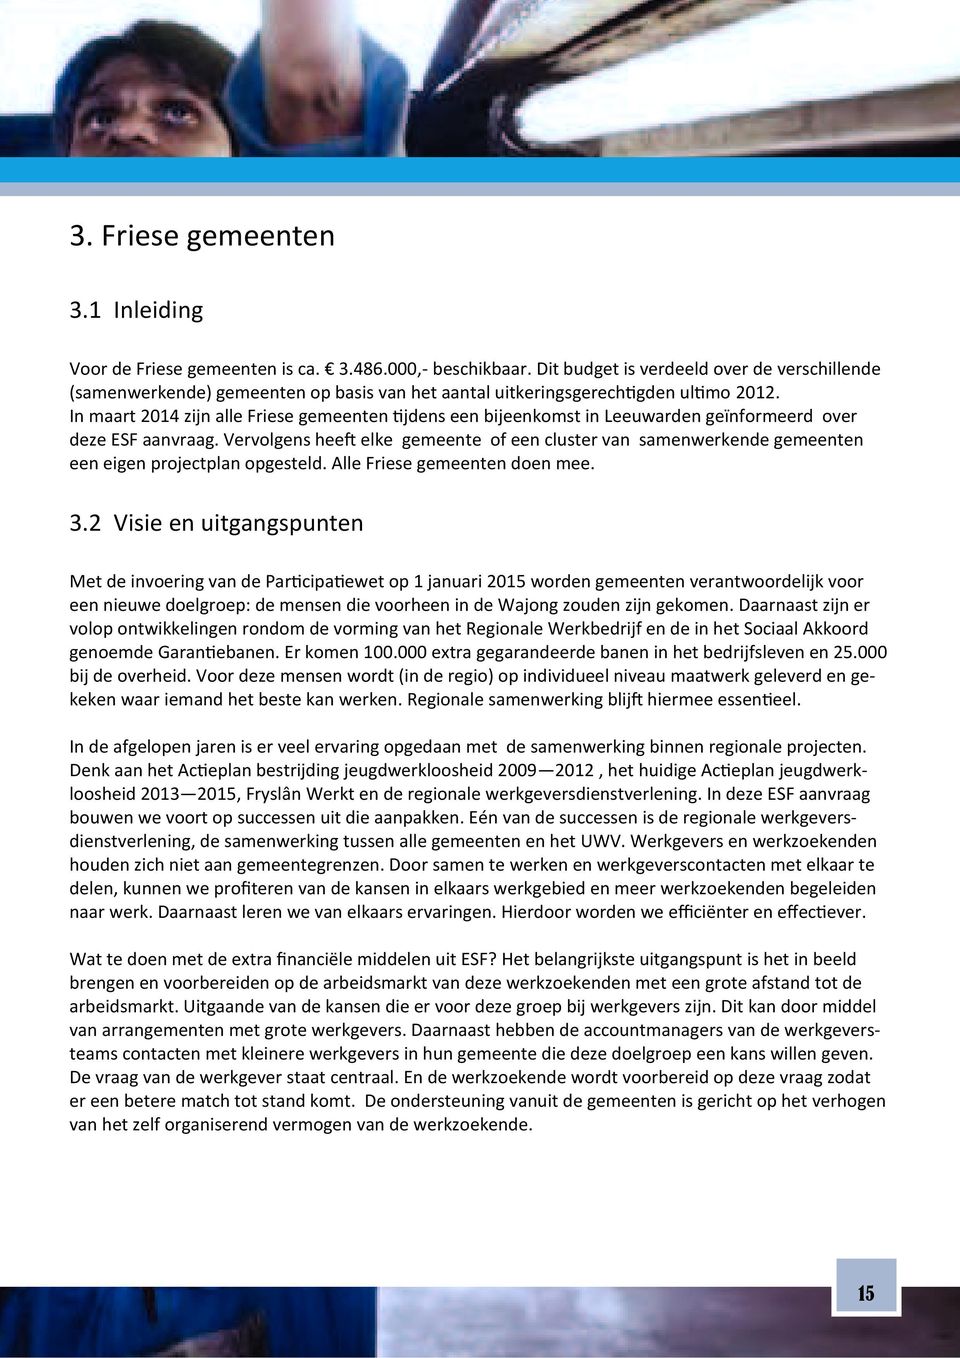 In maart 2014 zijn alle Friese gemeenten jdens een bijeenkomst in Leeuwarden geïnformeerd over deze ESF aanvraag.